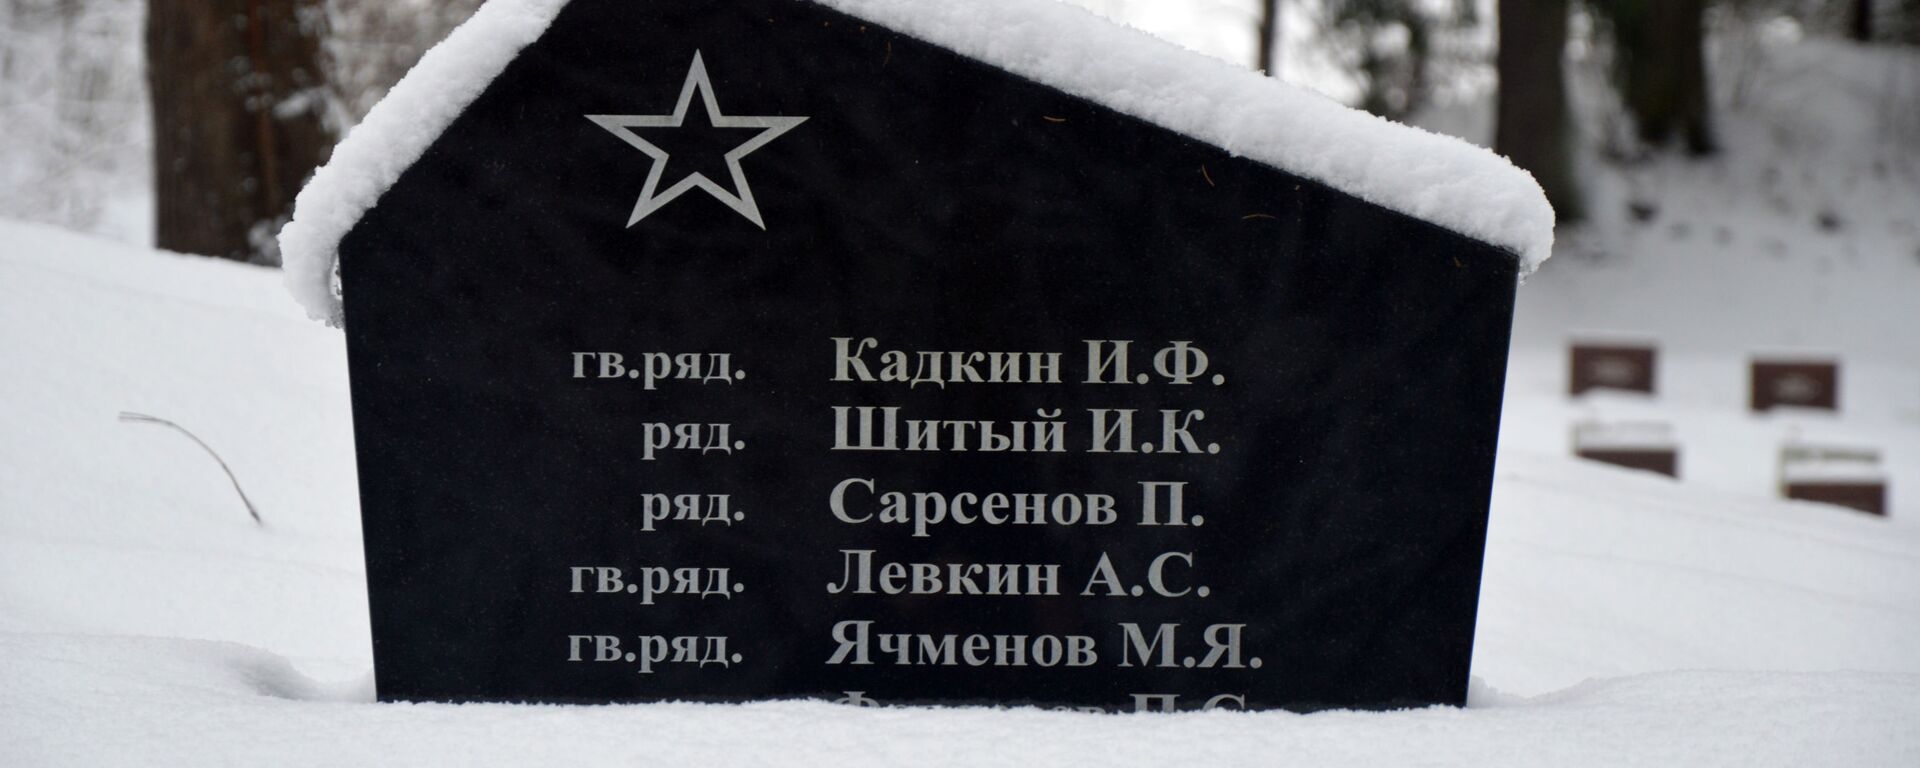 Tarybinis paminklas - Sputnik Lietuva, 1920, 12.12.2019